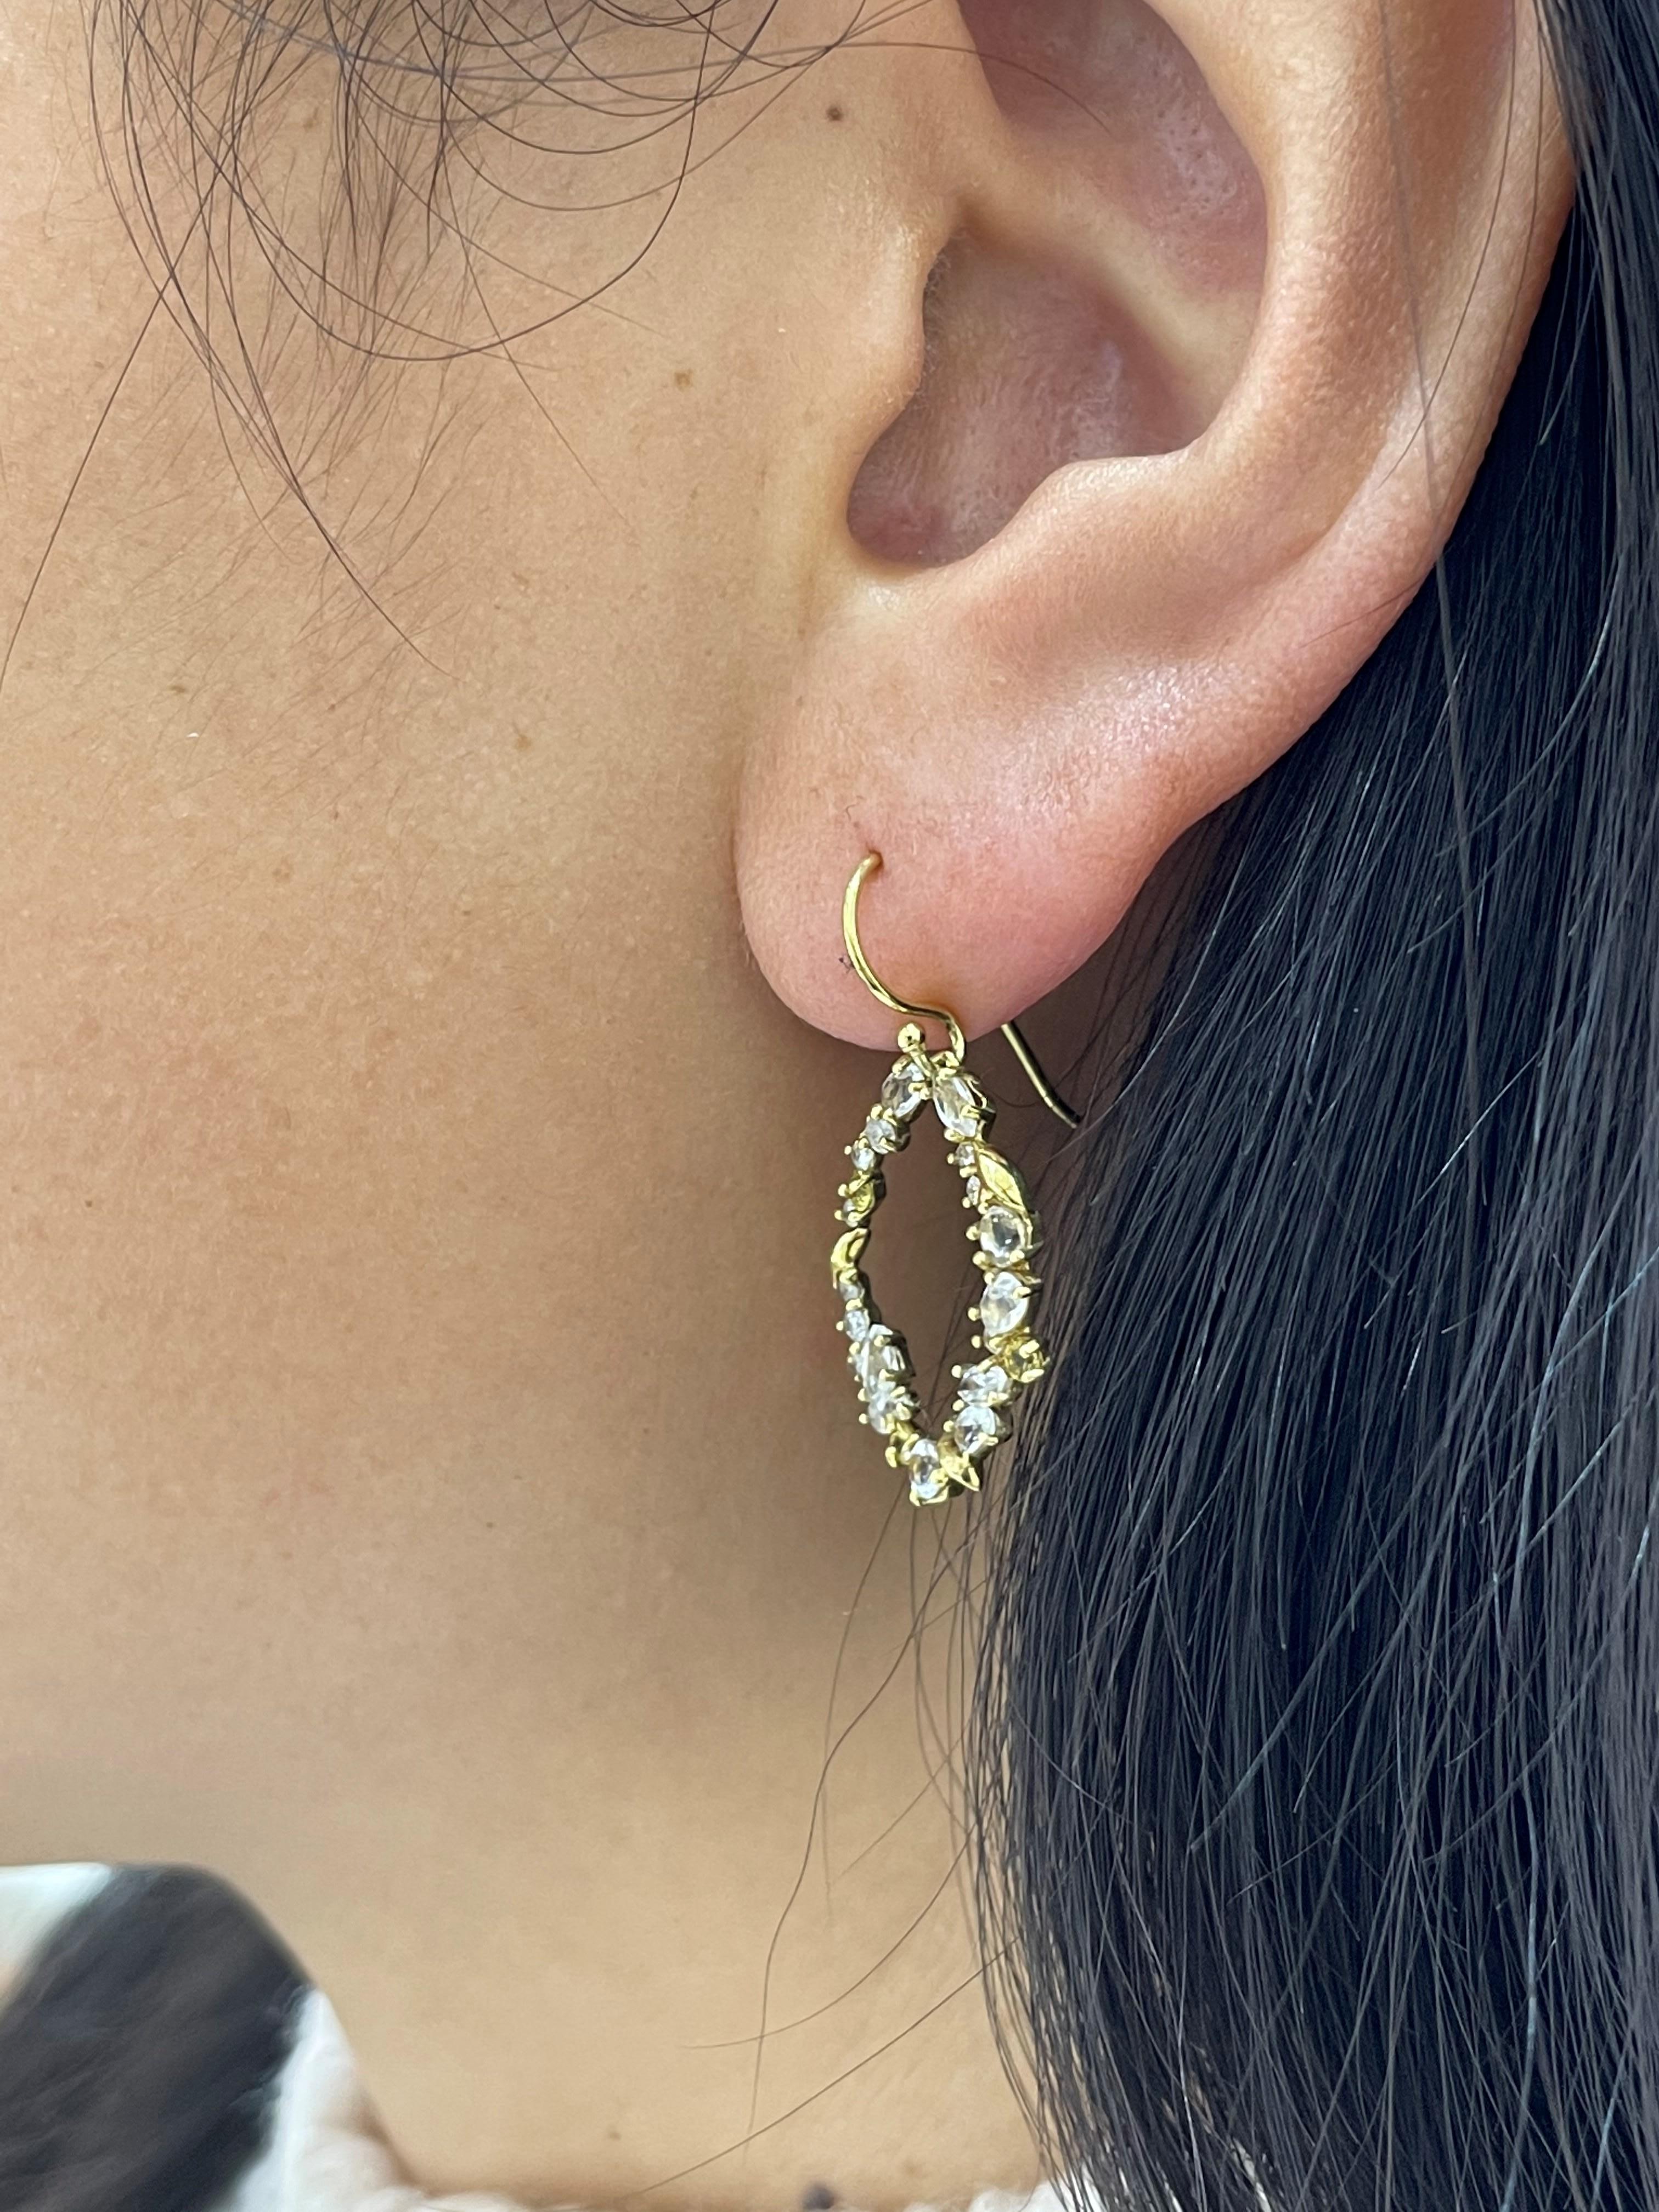 alexis bittar chandelier earrings